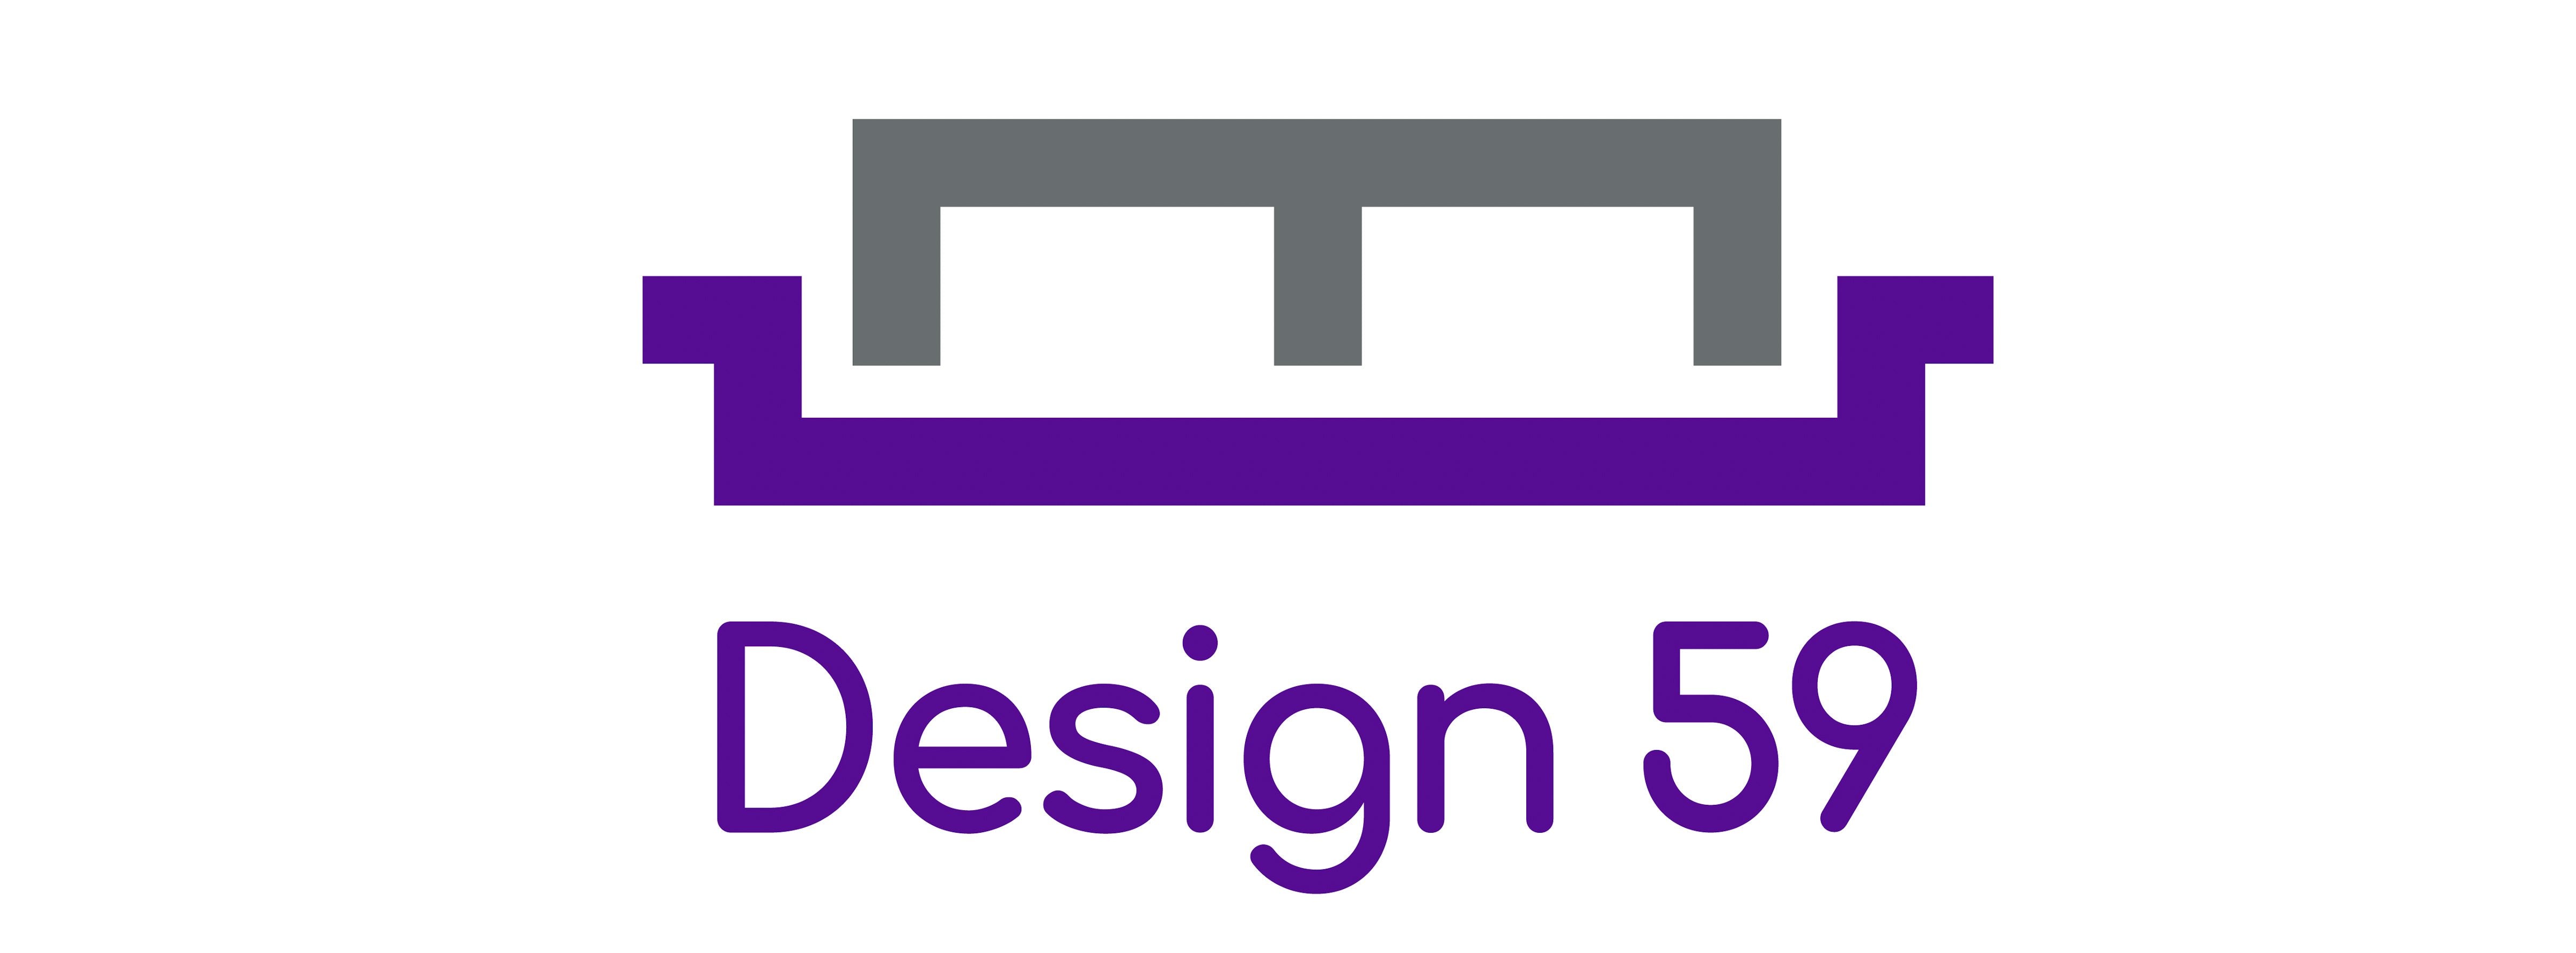 Design59